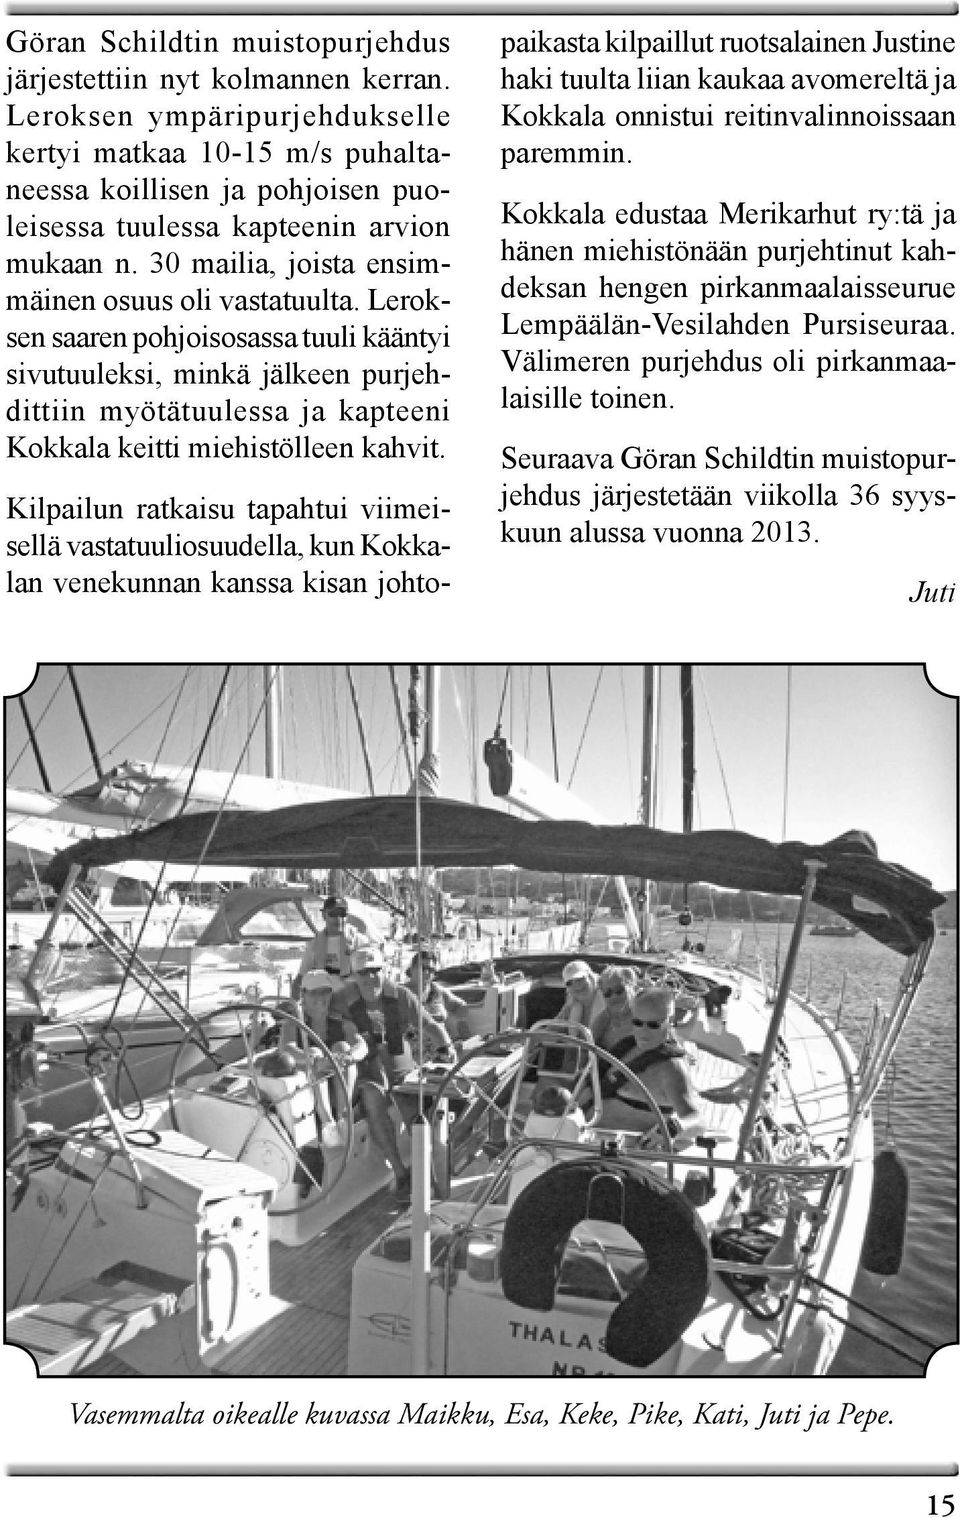 Leroksen saaren pohjoisosassa tuuli kääntyi sivutuuleksi, minkä jälkeen purjehdittiin myötätuulessa ja kapteeni Kokkala keitti miehistölleen kahvit.